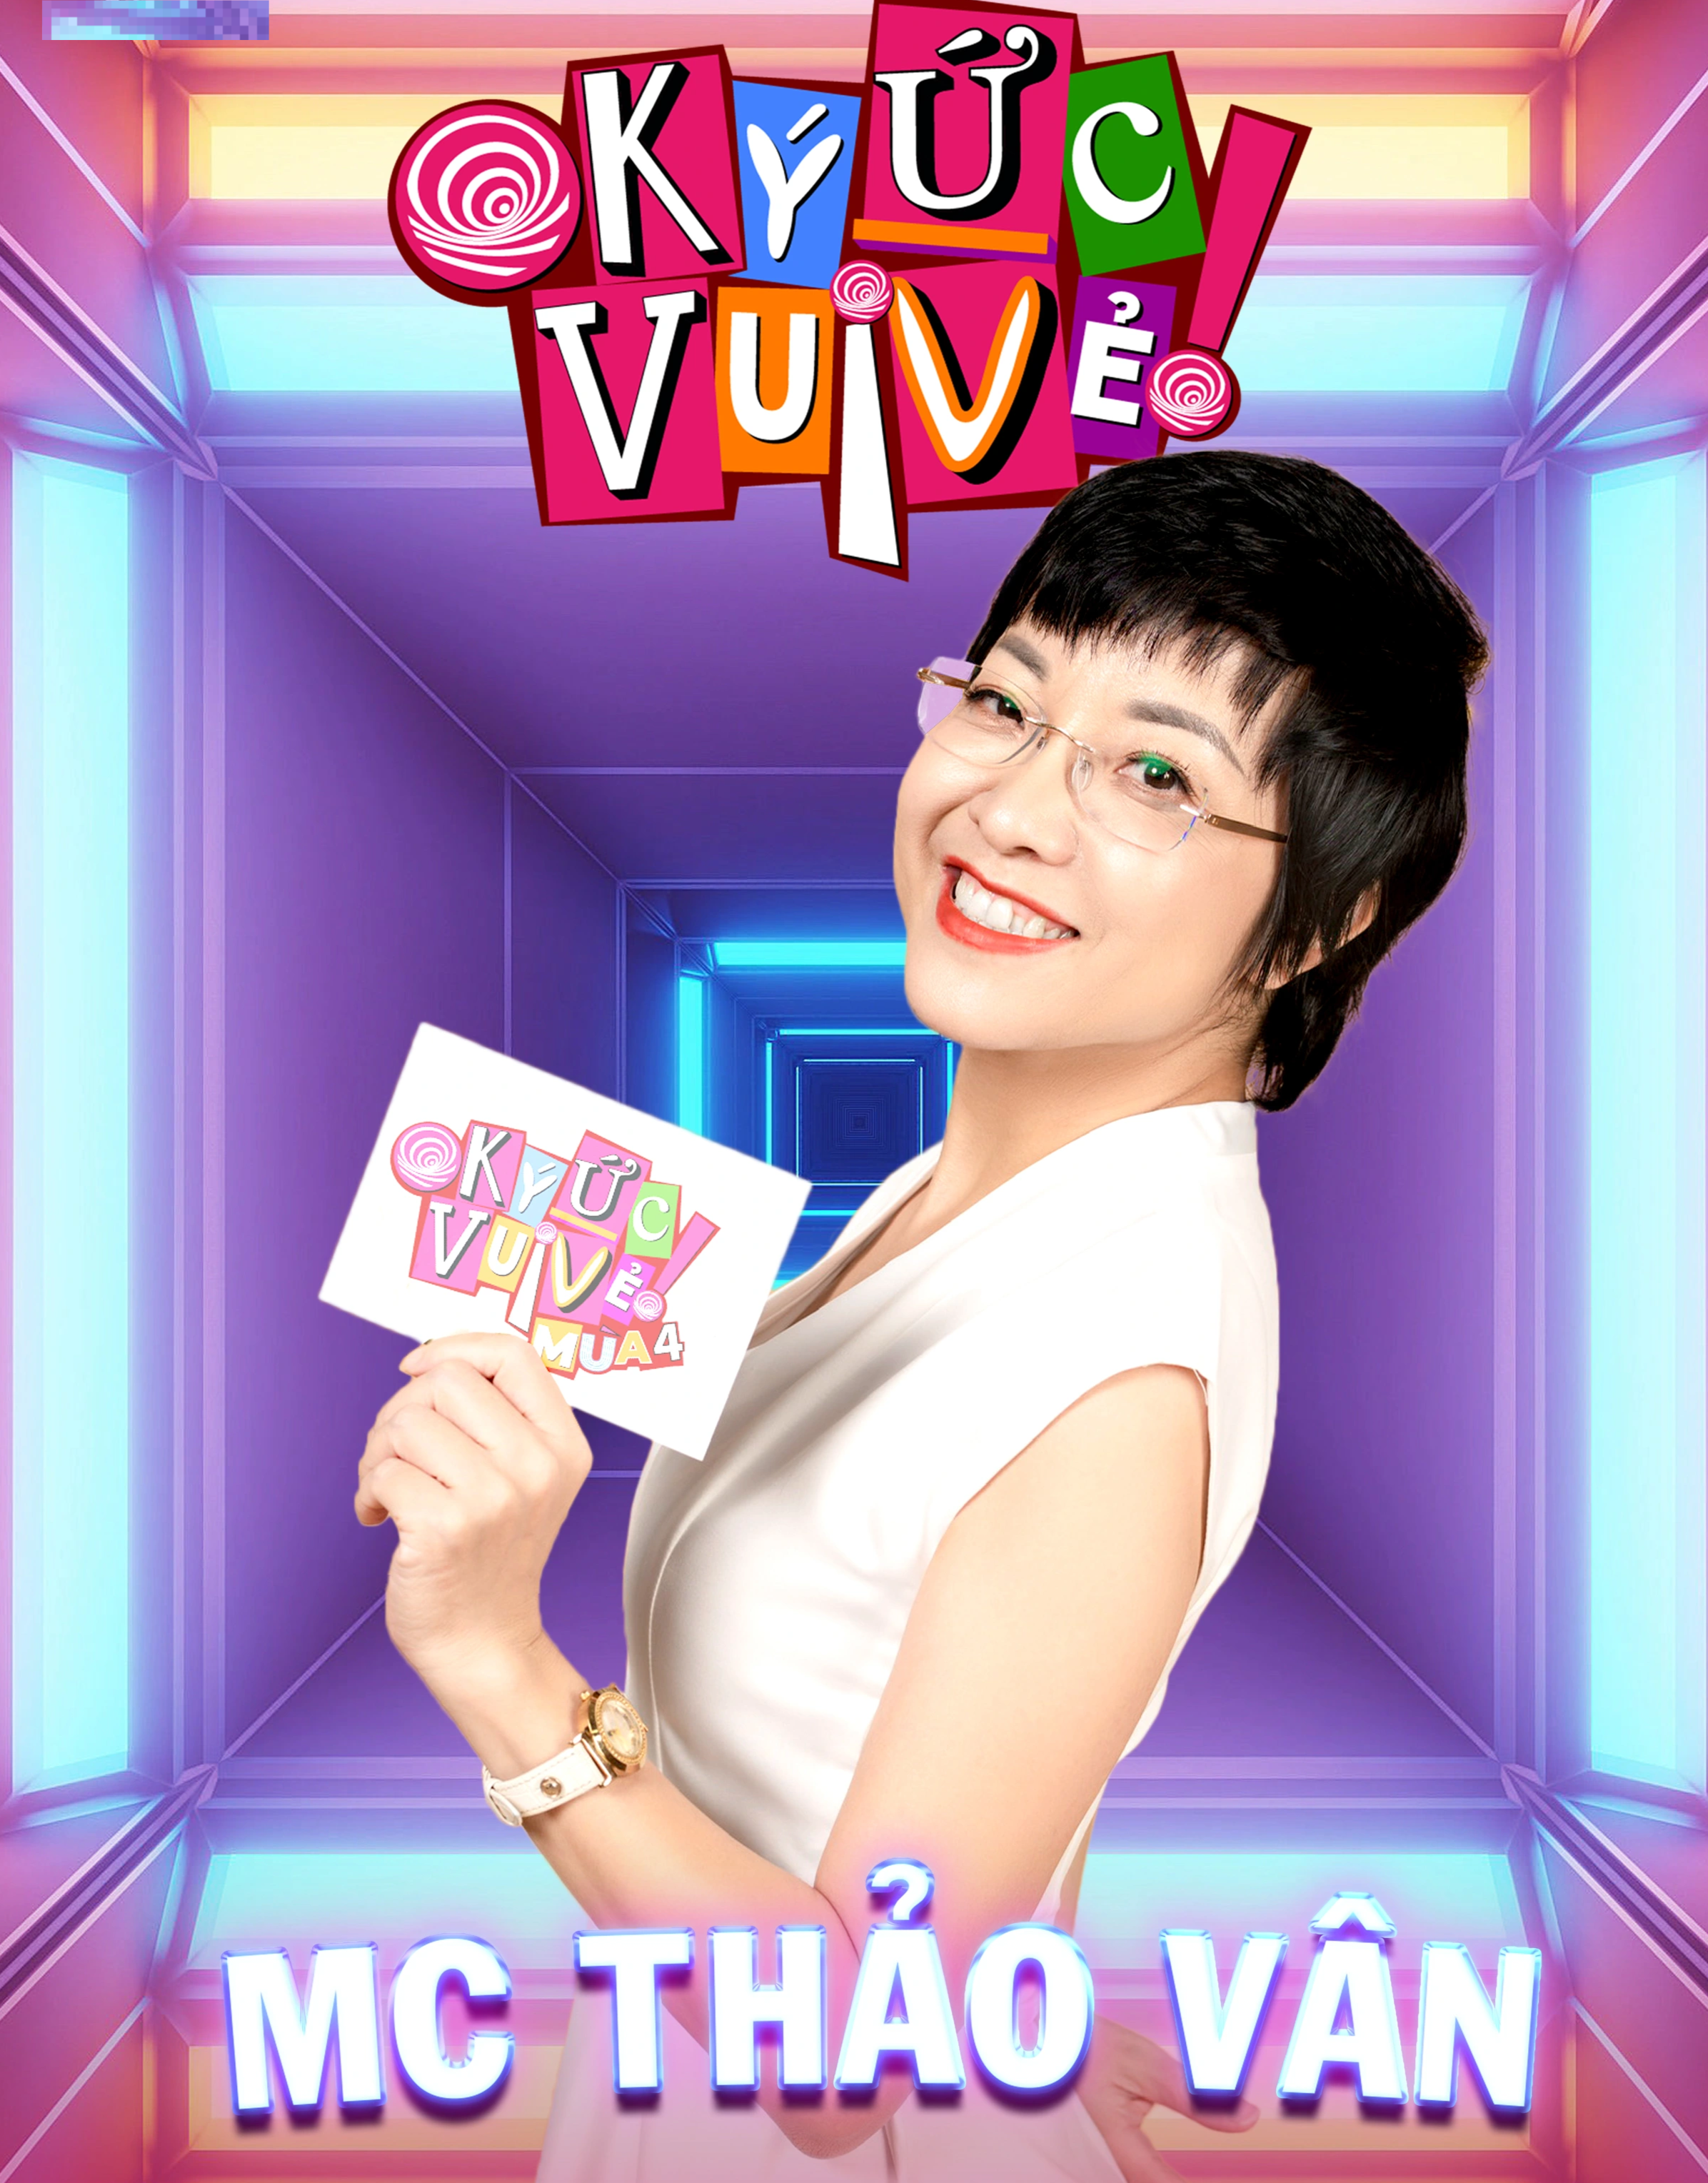 MC Thảo Vân trở thành người dẫn chương trình Ký ức vui vẻ - 1